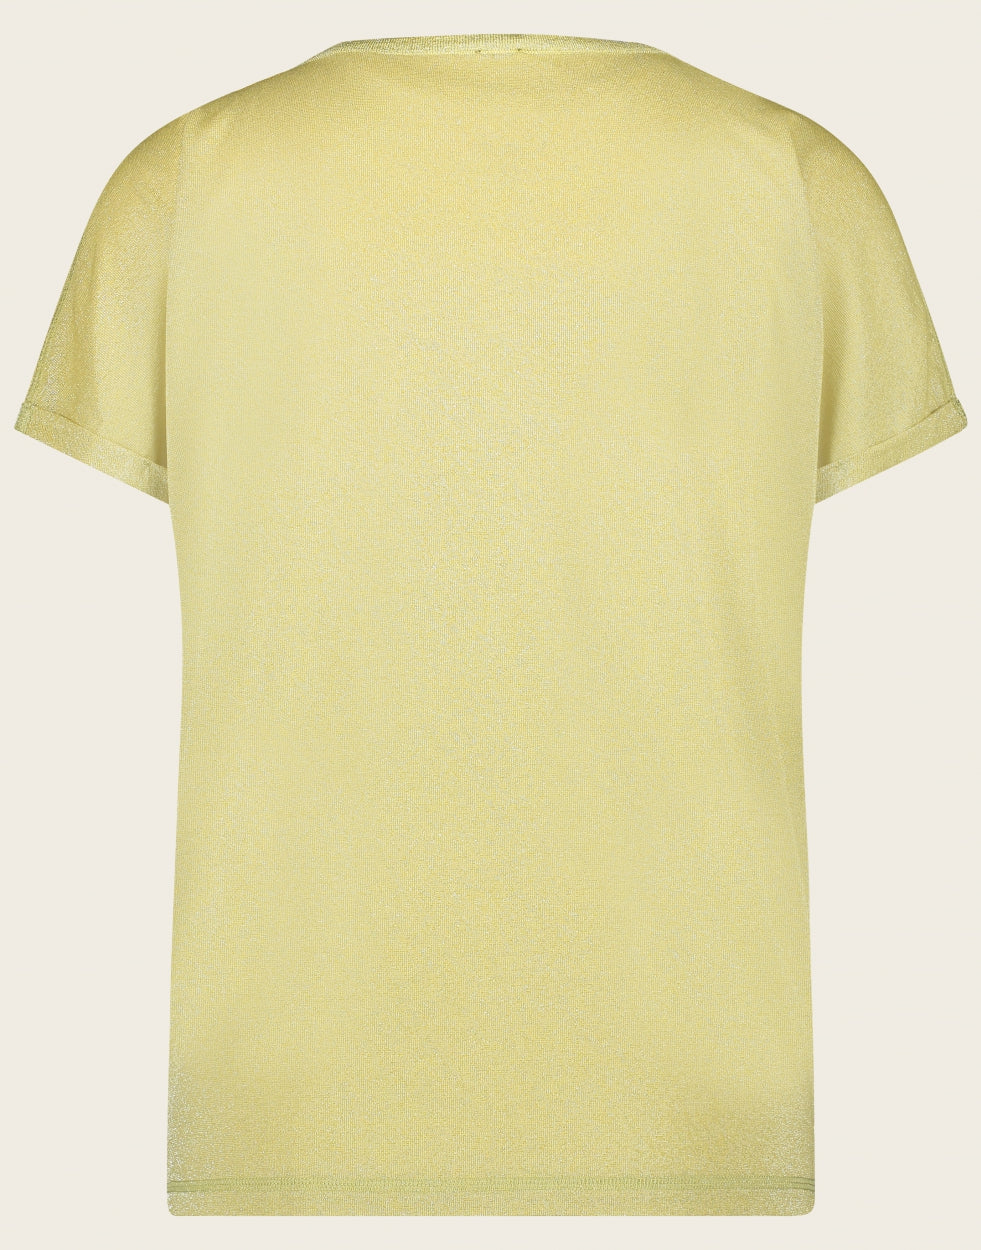 Hope T shirt | Light gold